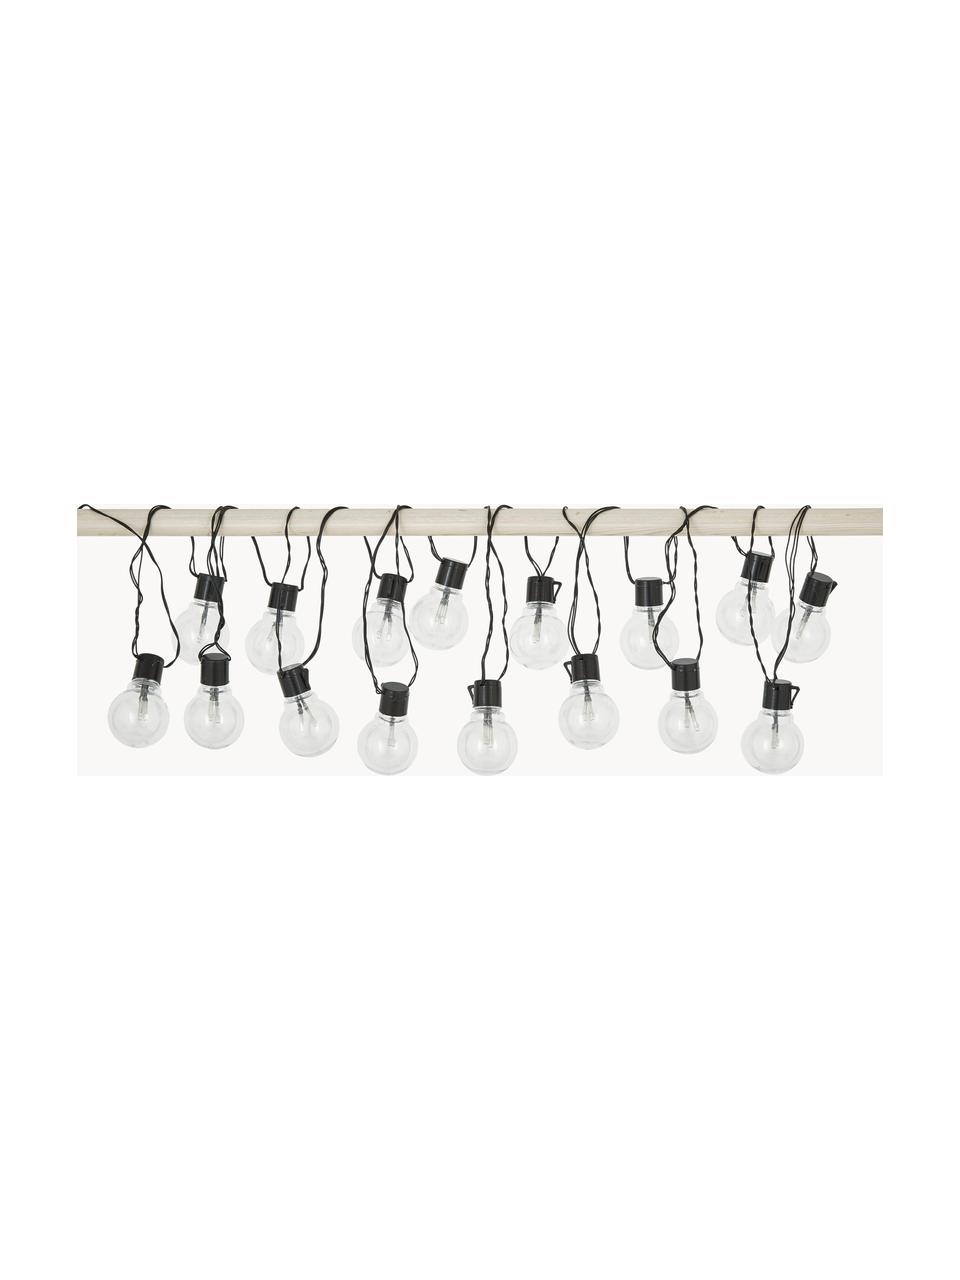 Guirlande lumineuse guinguette LED Partaj, 950 cm, Noir, long. 950 cm